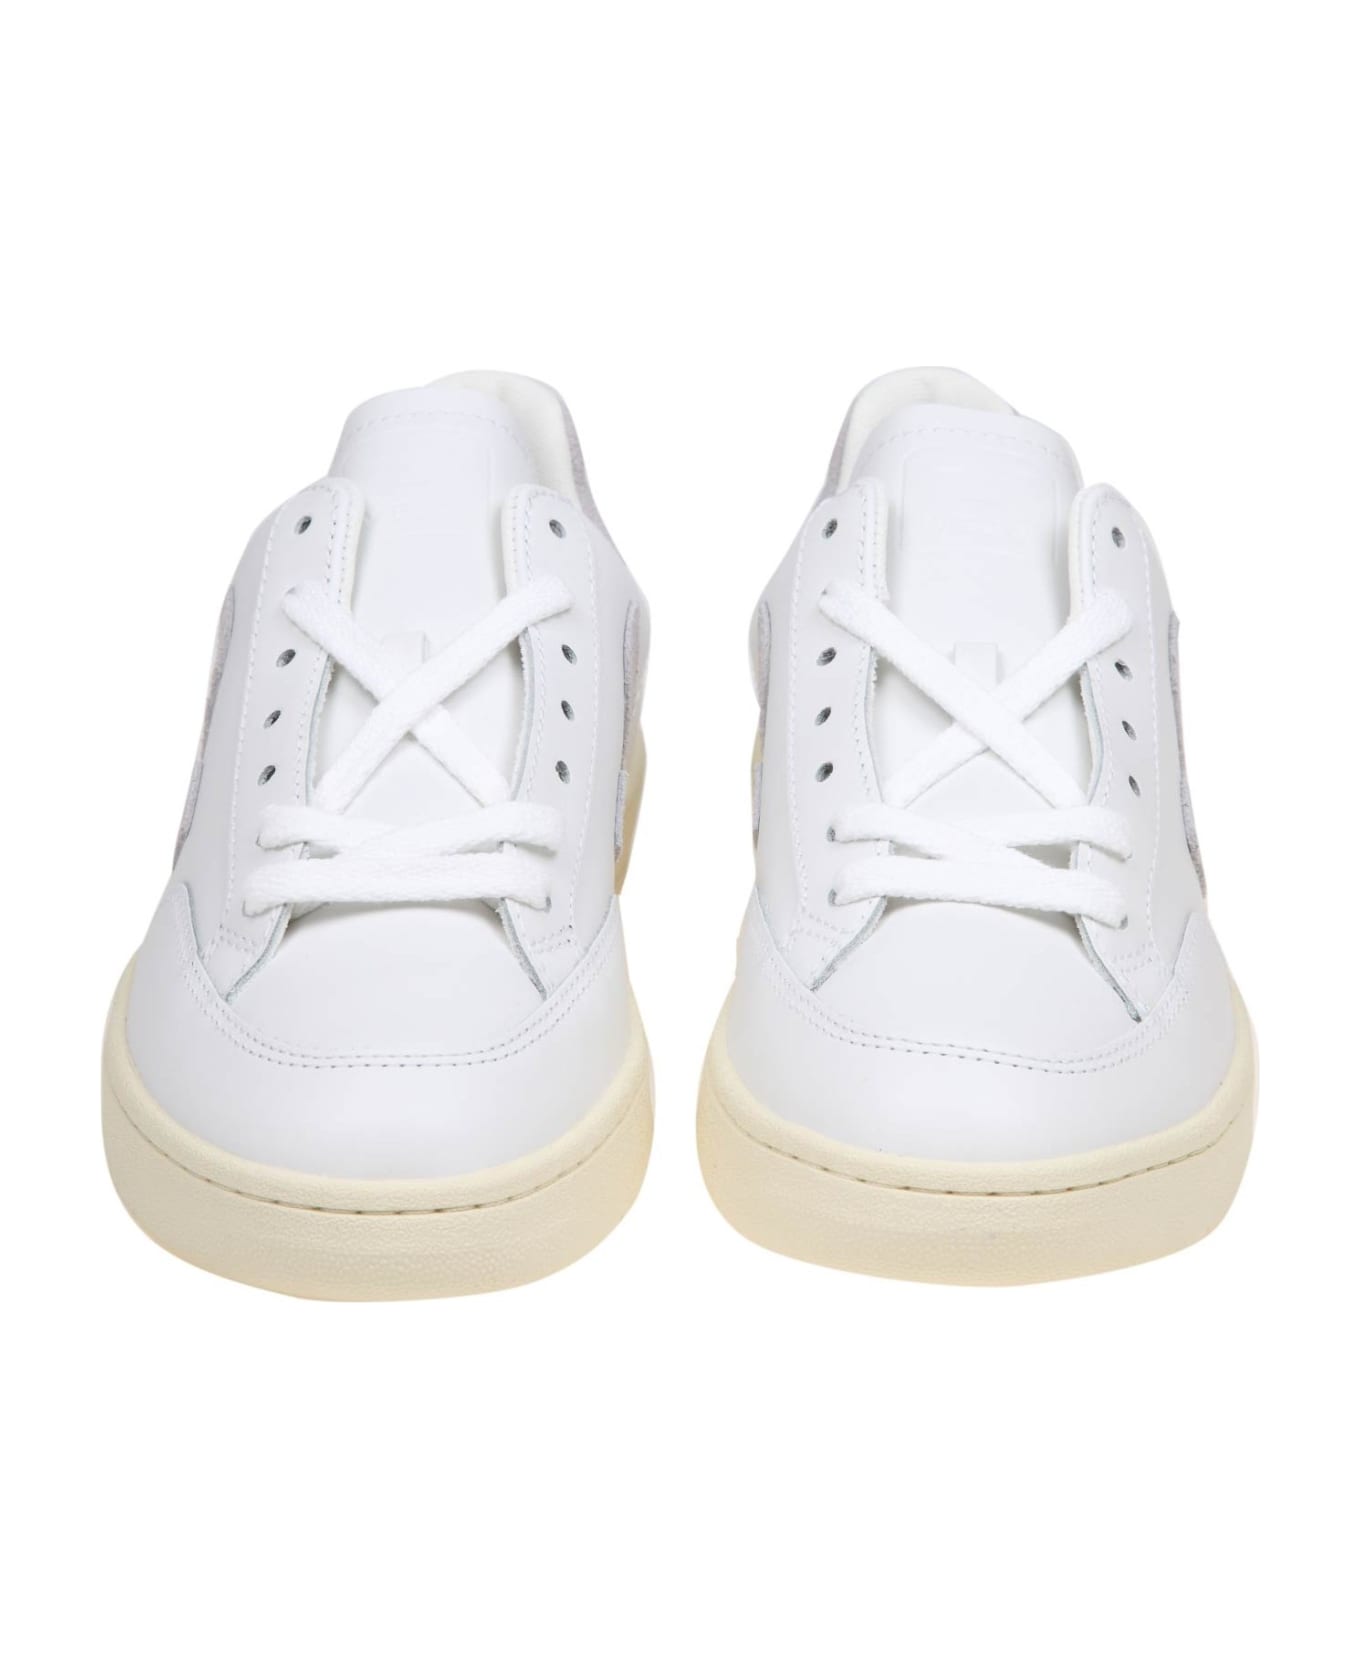 Veja V 12 Sneakers In White/grey Leather - white/light grey